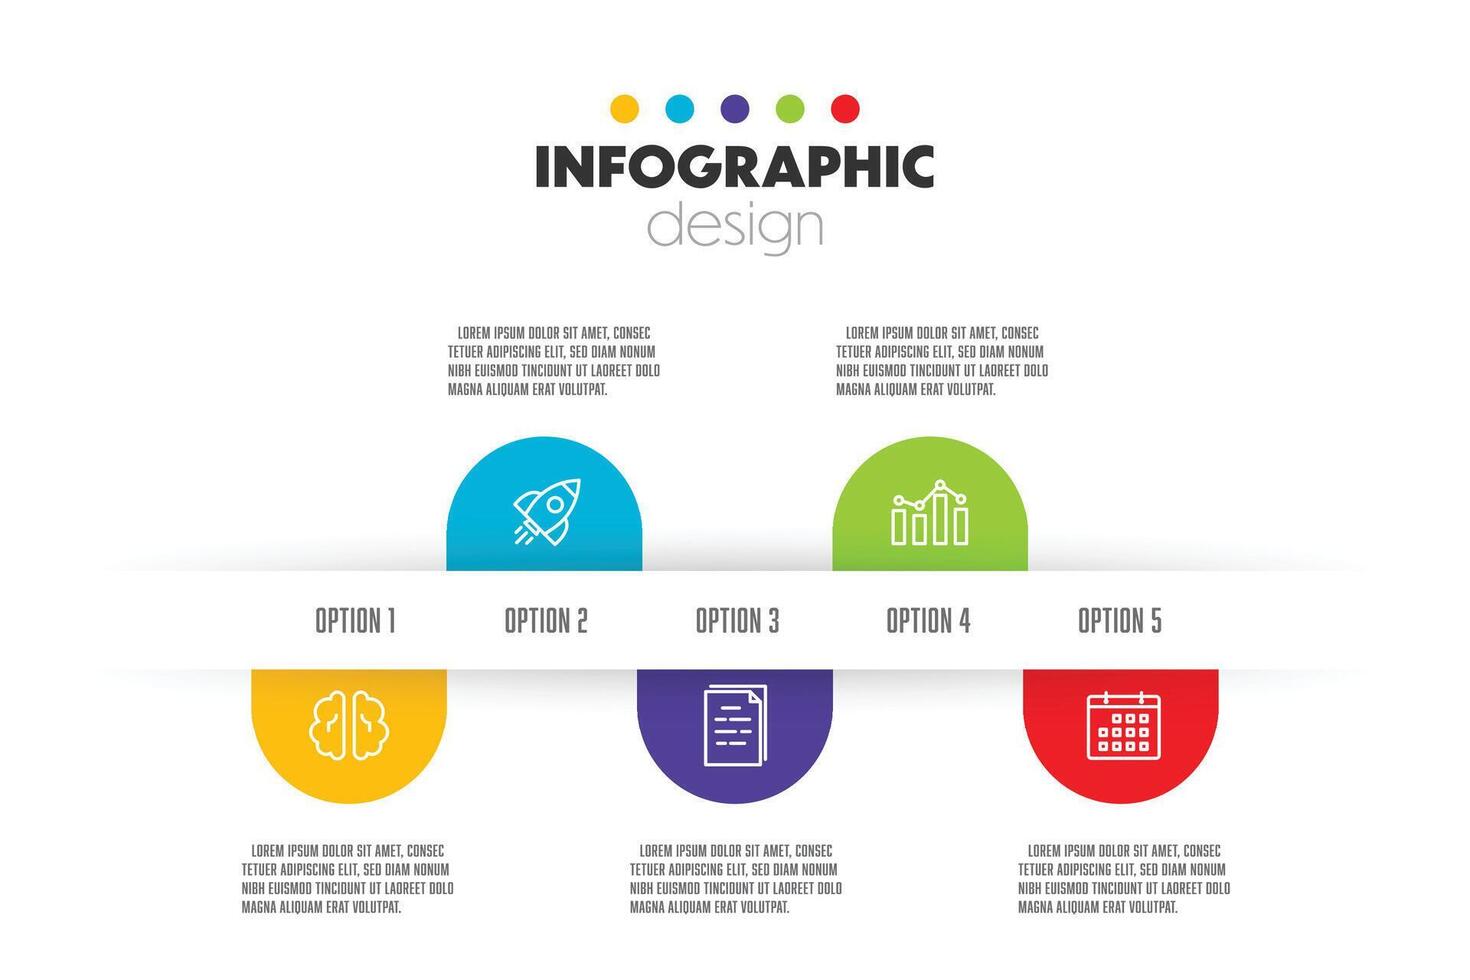 vektor infographic design mall med ikon 5 alternativ. modern infographic för presentation.